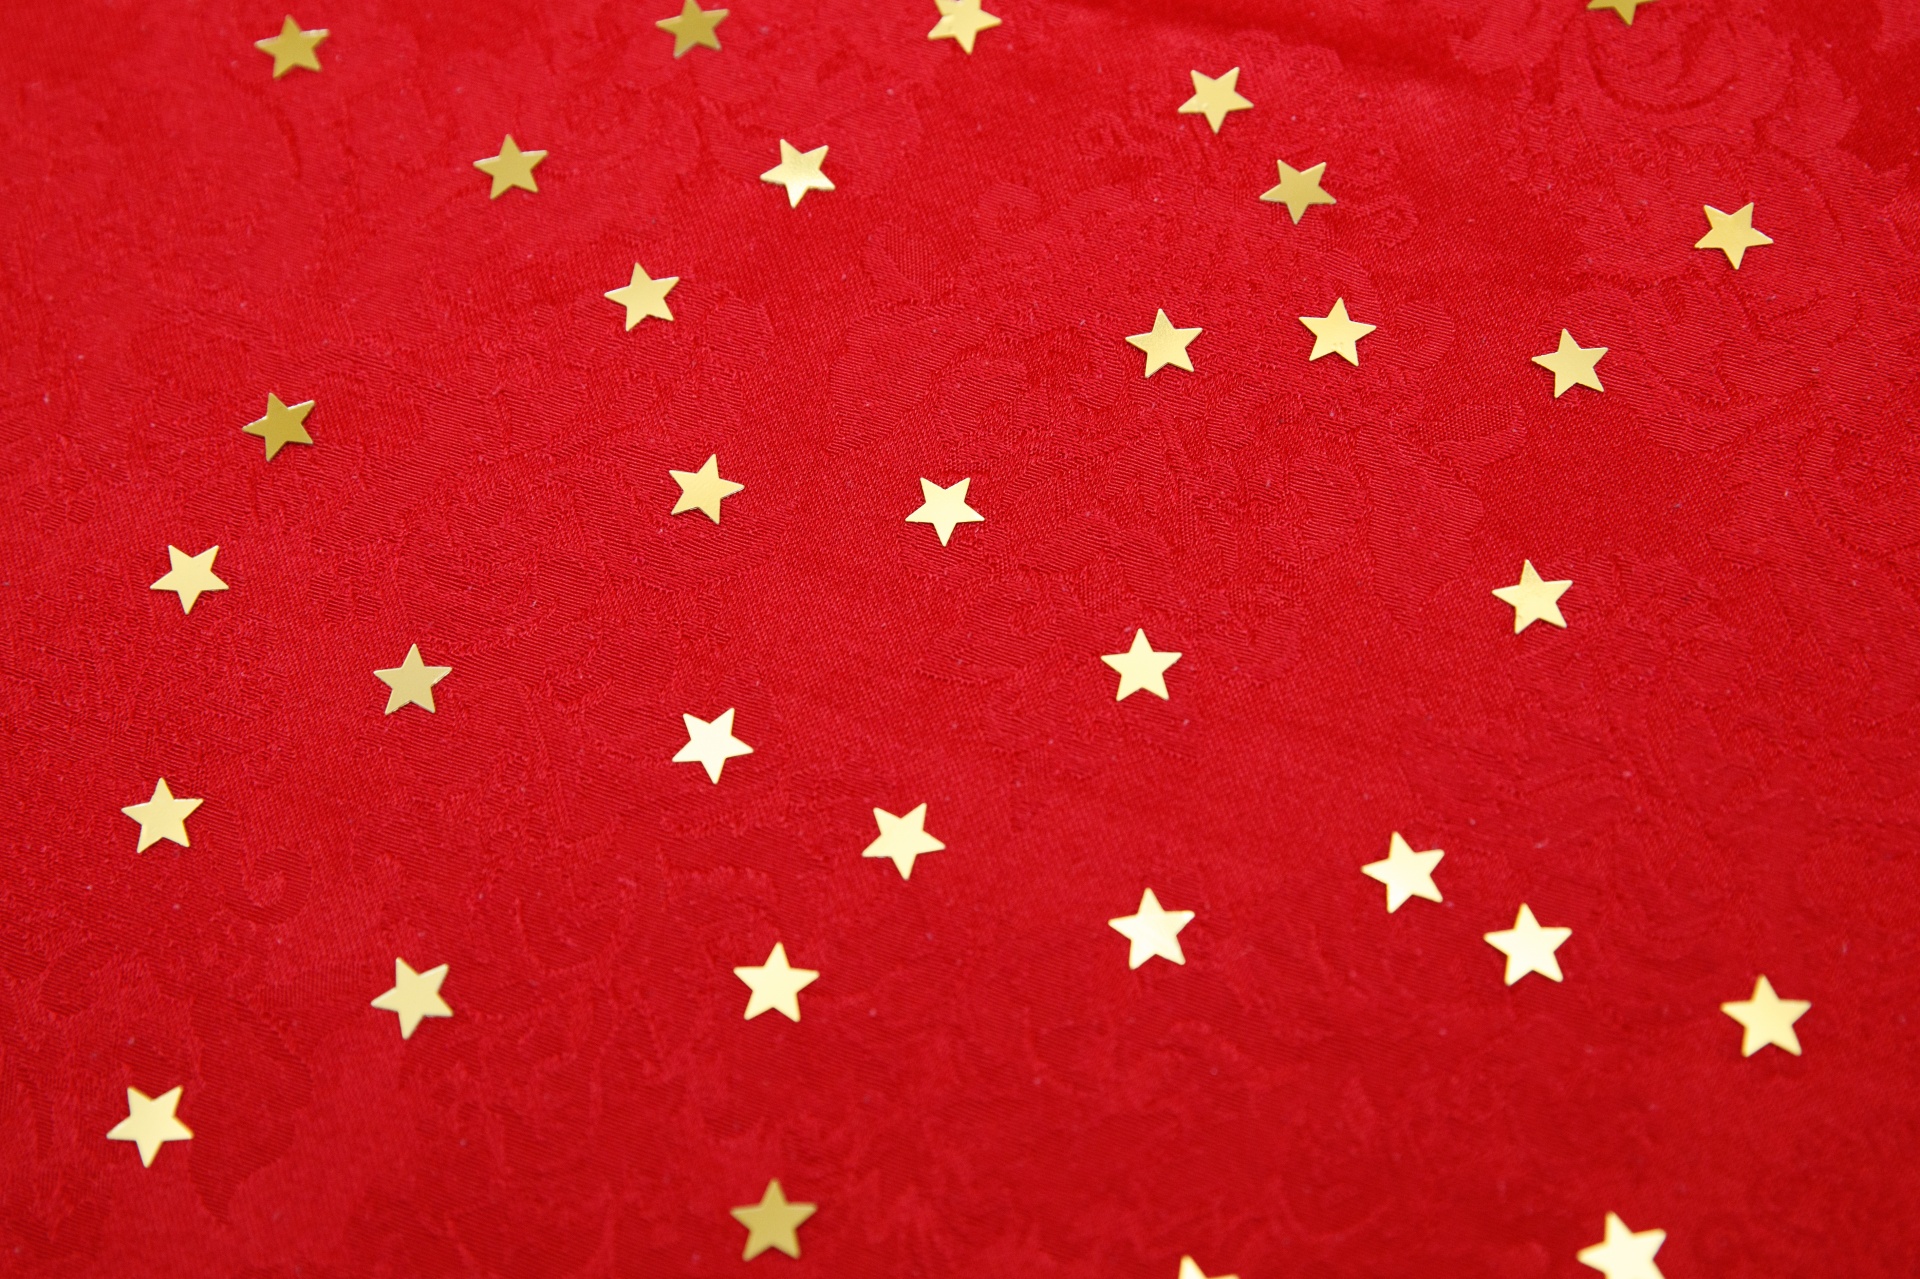 Estrellas doradas sobre fondo rojo